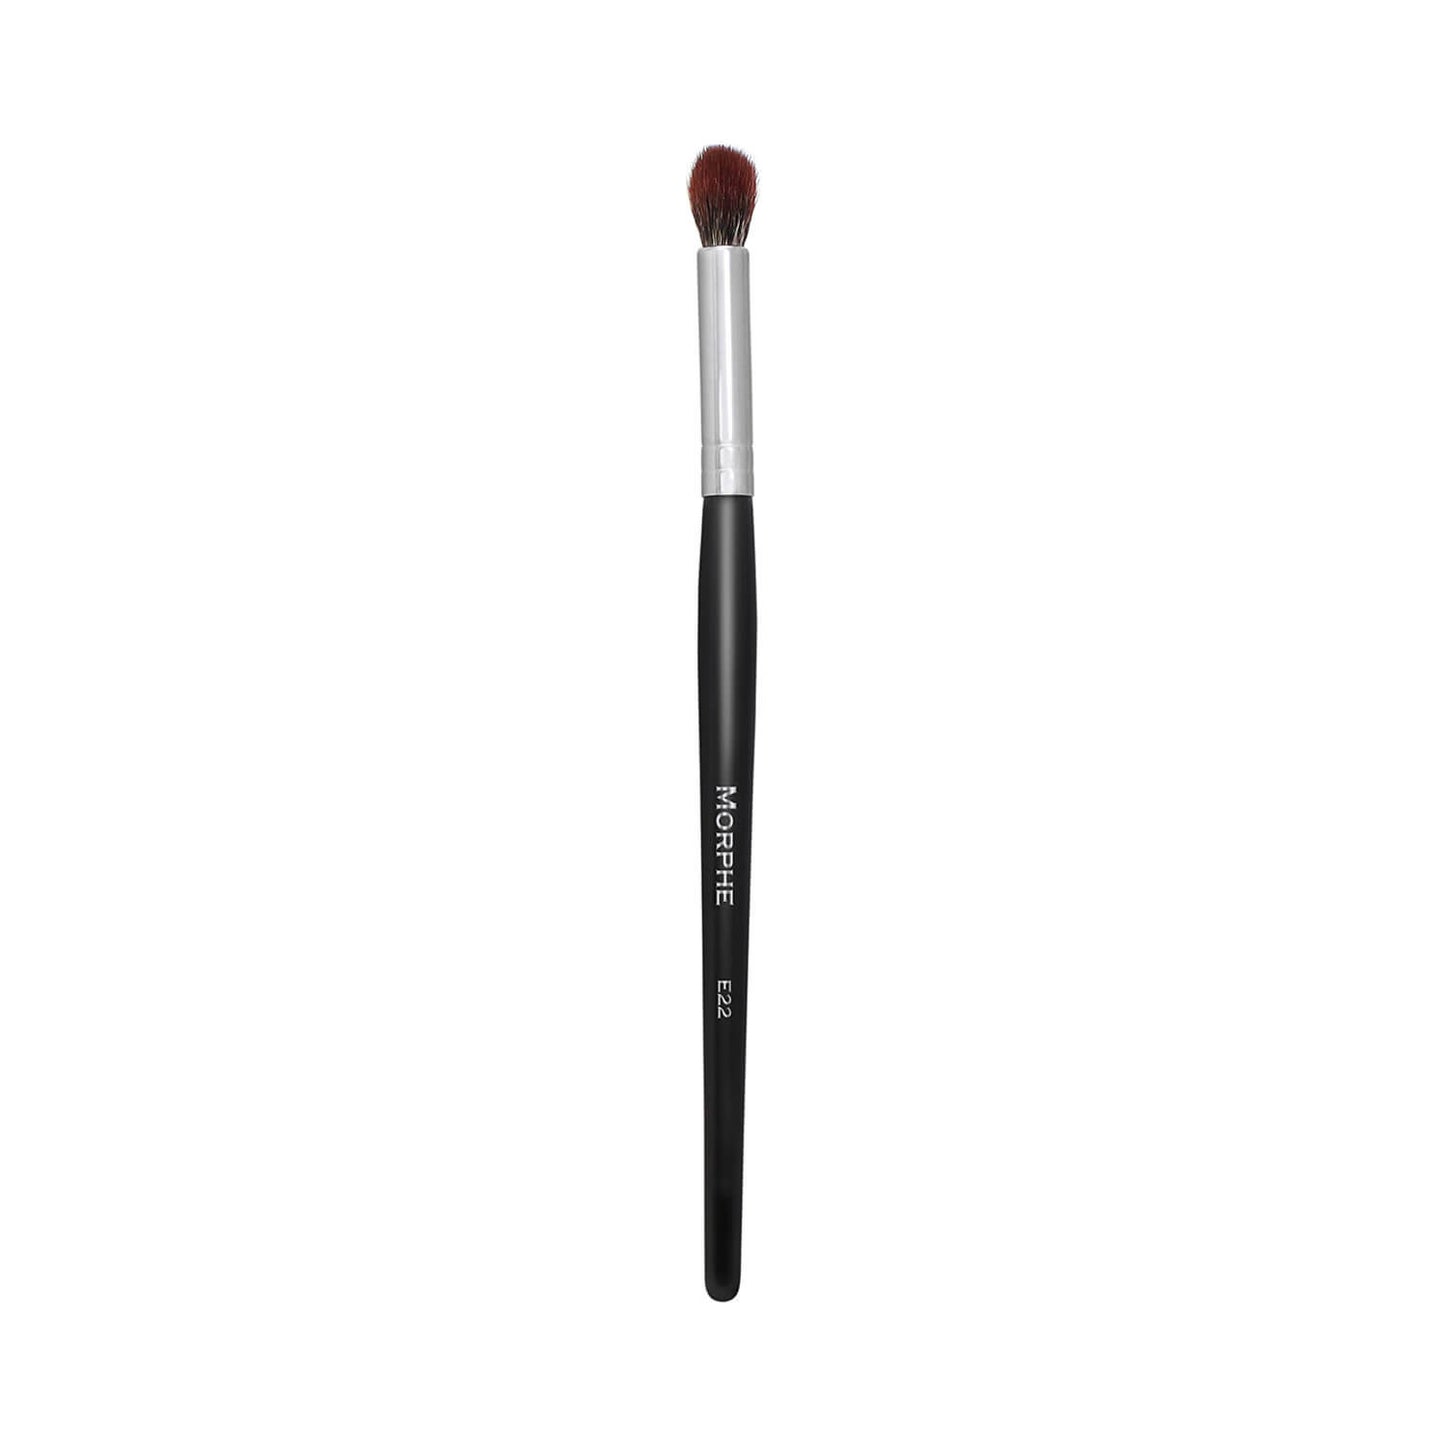 Morphe Cosmetics E22 Pointed Blender Brush